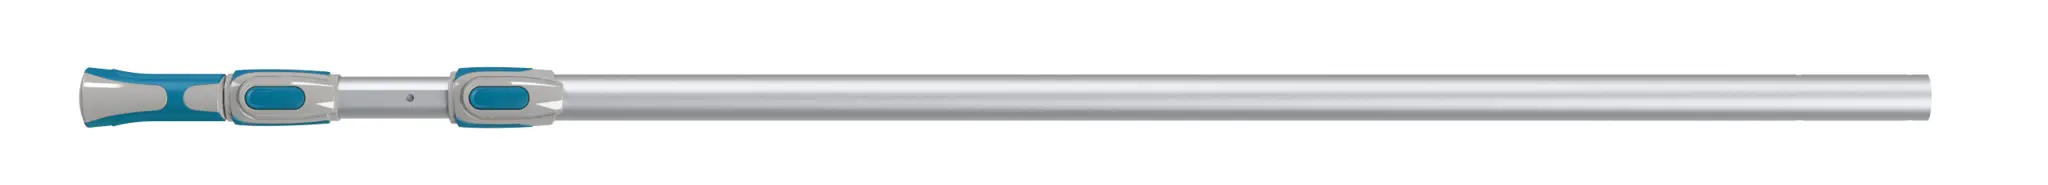 Ручка телескопическая Naterial 1.5-4.5 м алюминий